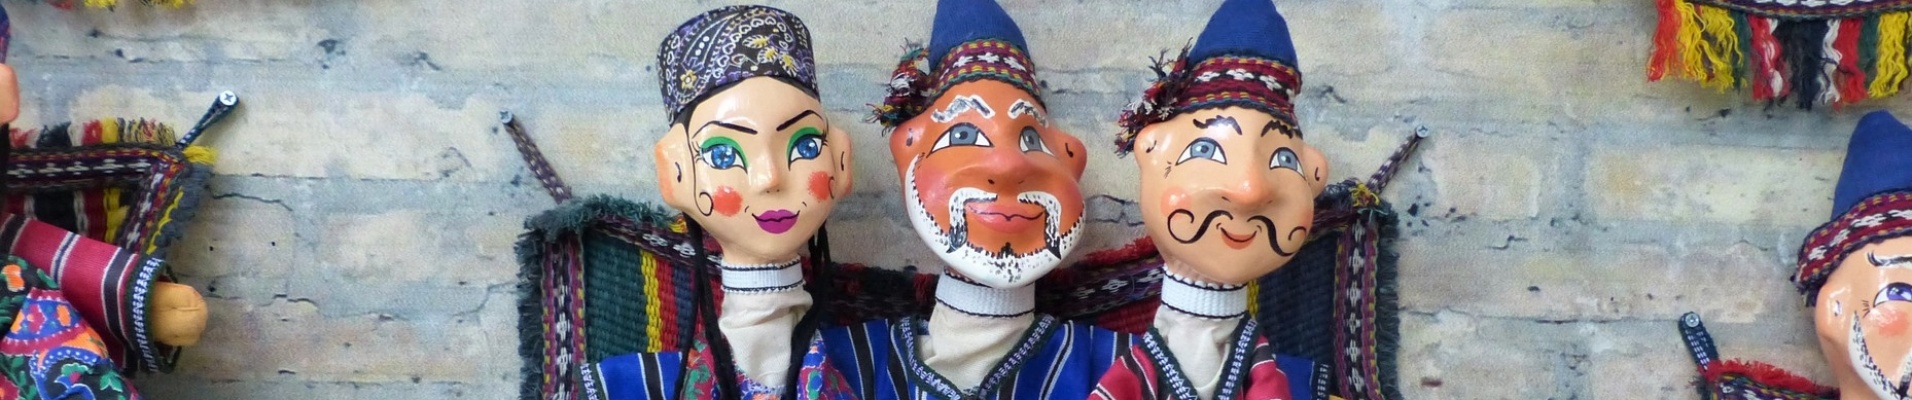 Marionnettes traditionnelles, Boukhara, Ouzbékistan